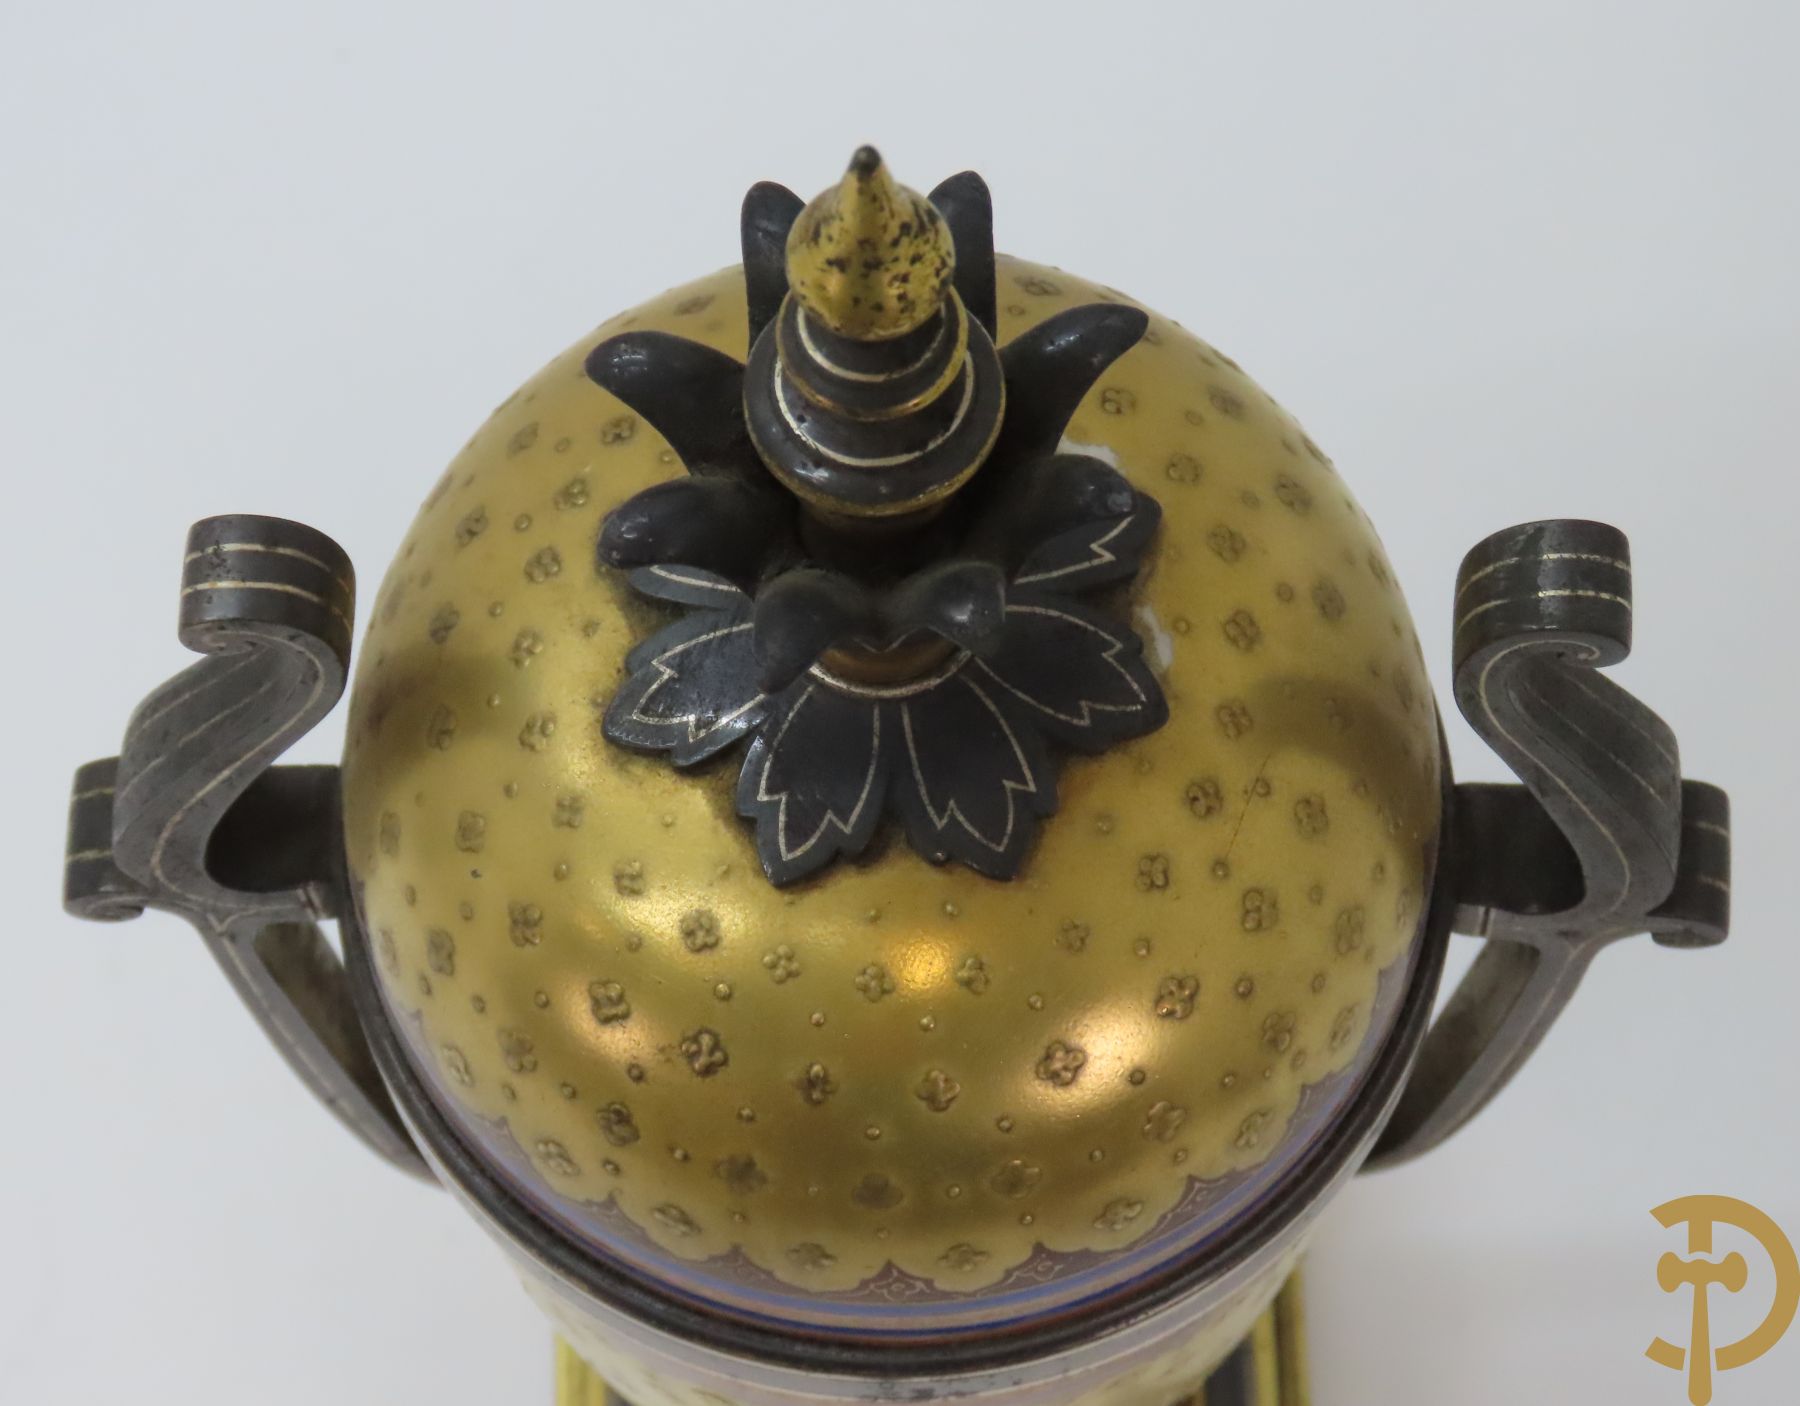 Paar vergulde metalen vazen met Middeleeuws decor van ridder, Malpass L. getekend onderaan